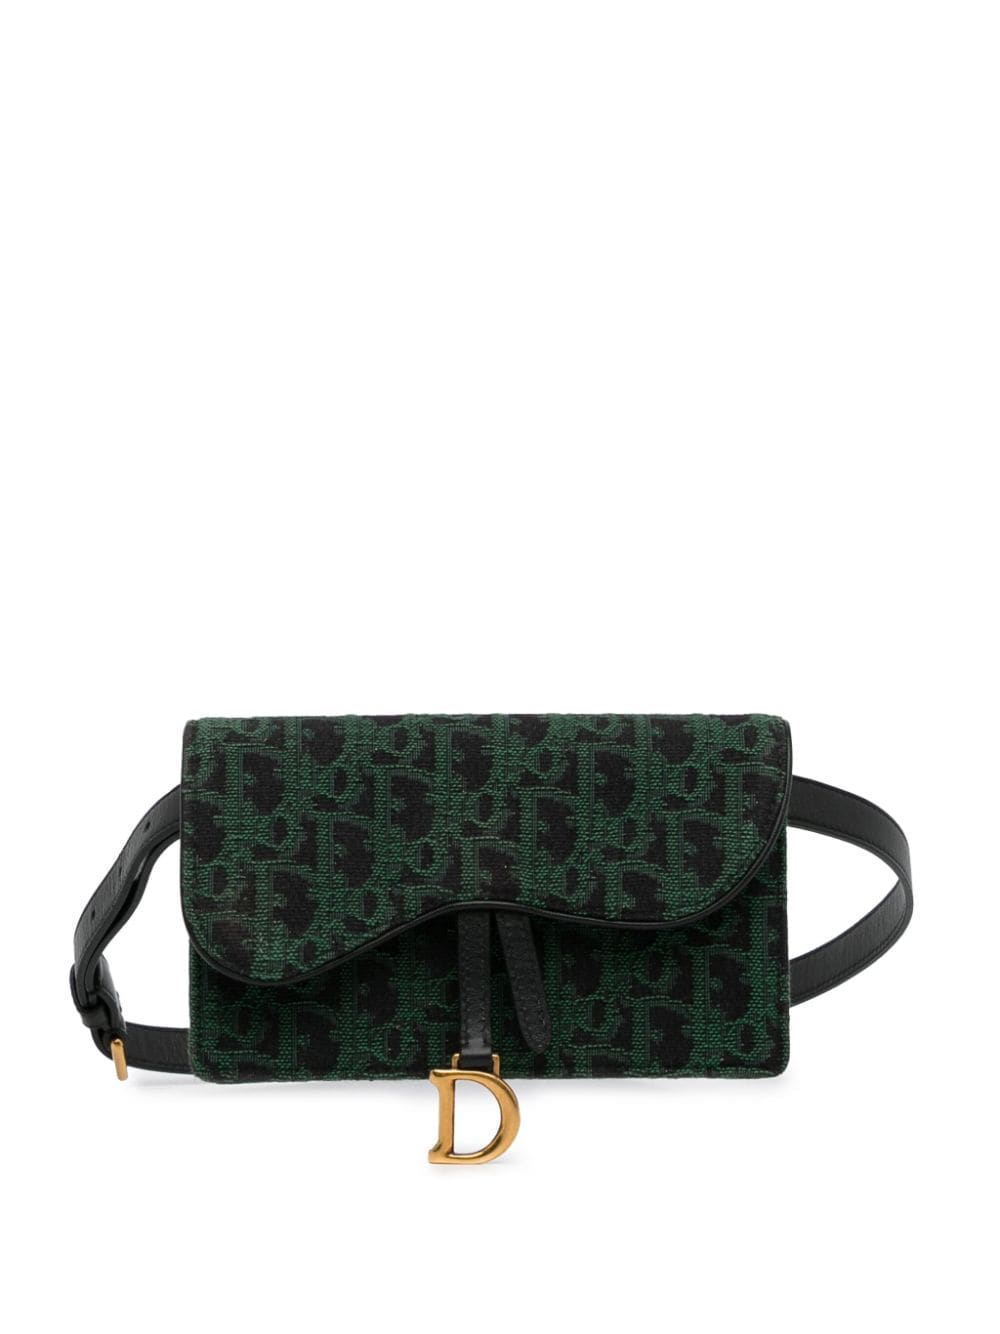 Pre-owned Dior 2019 Oblique Saddle Belt Bag In Green